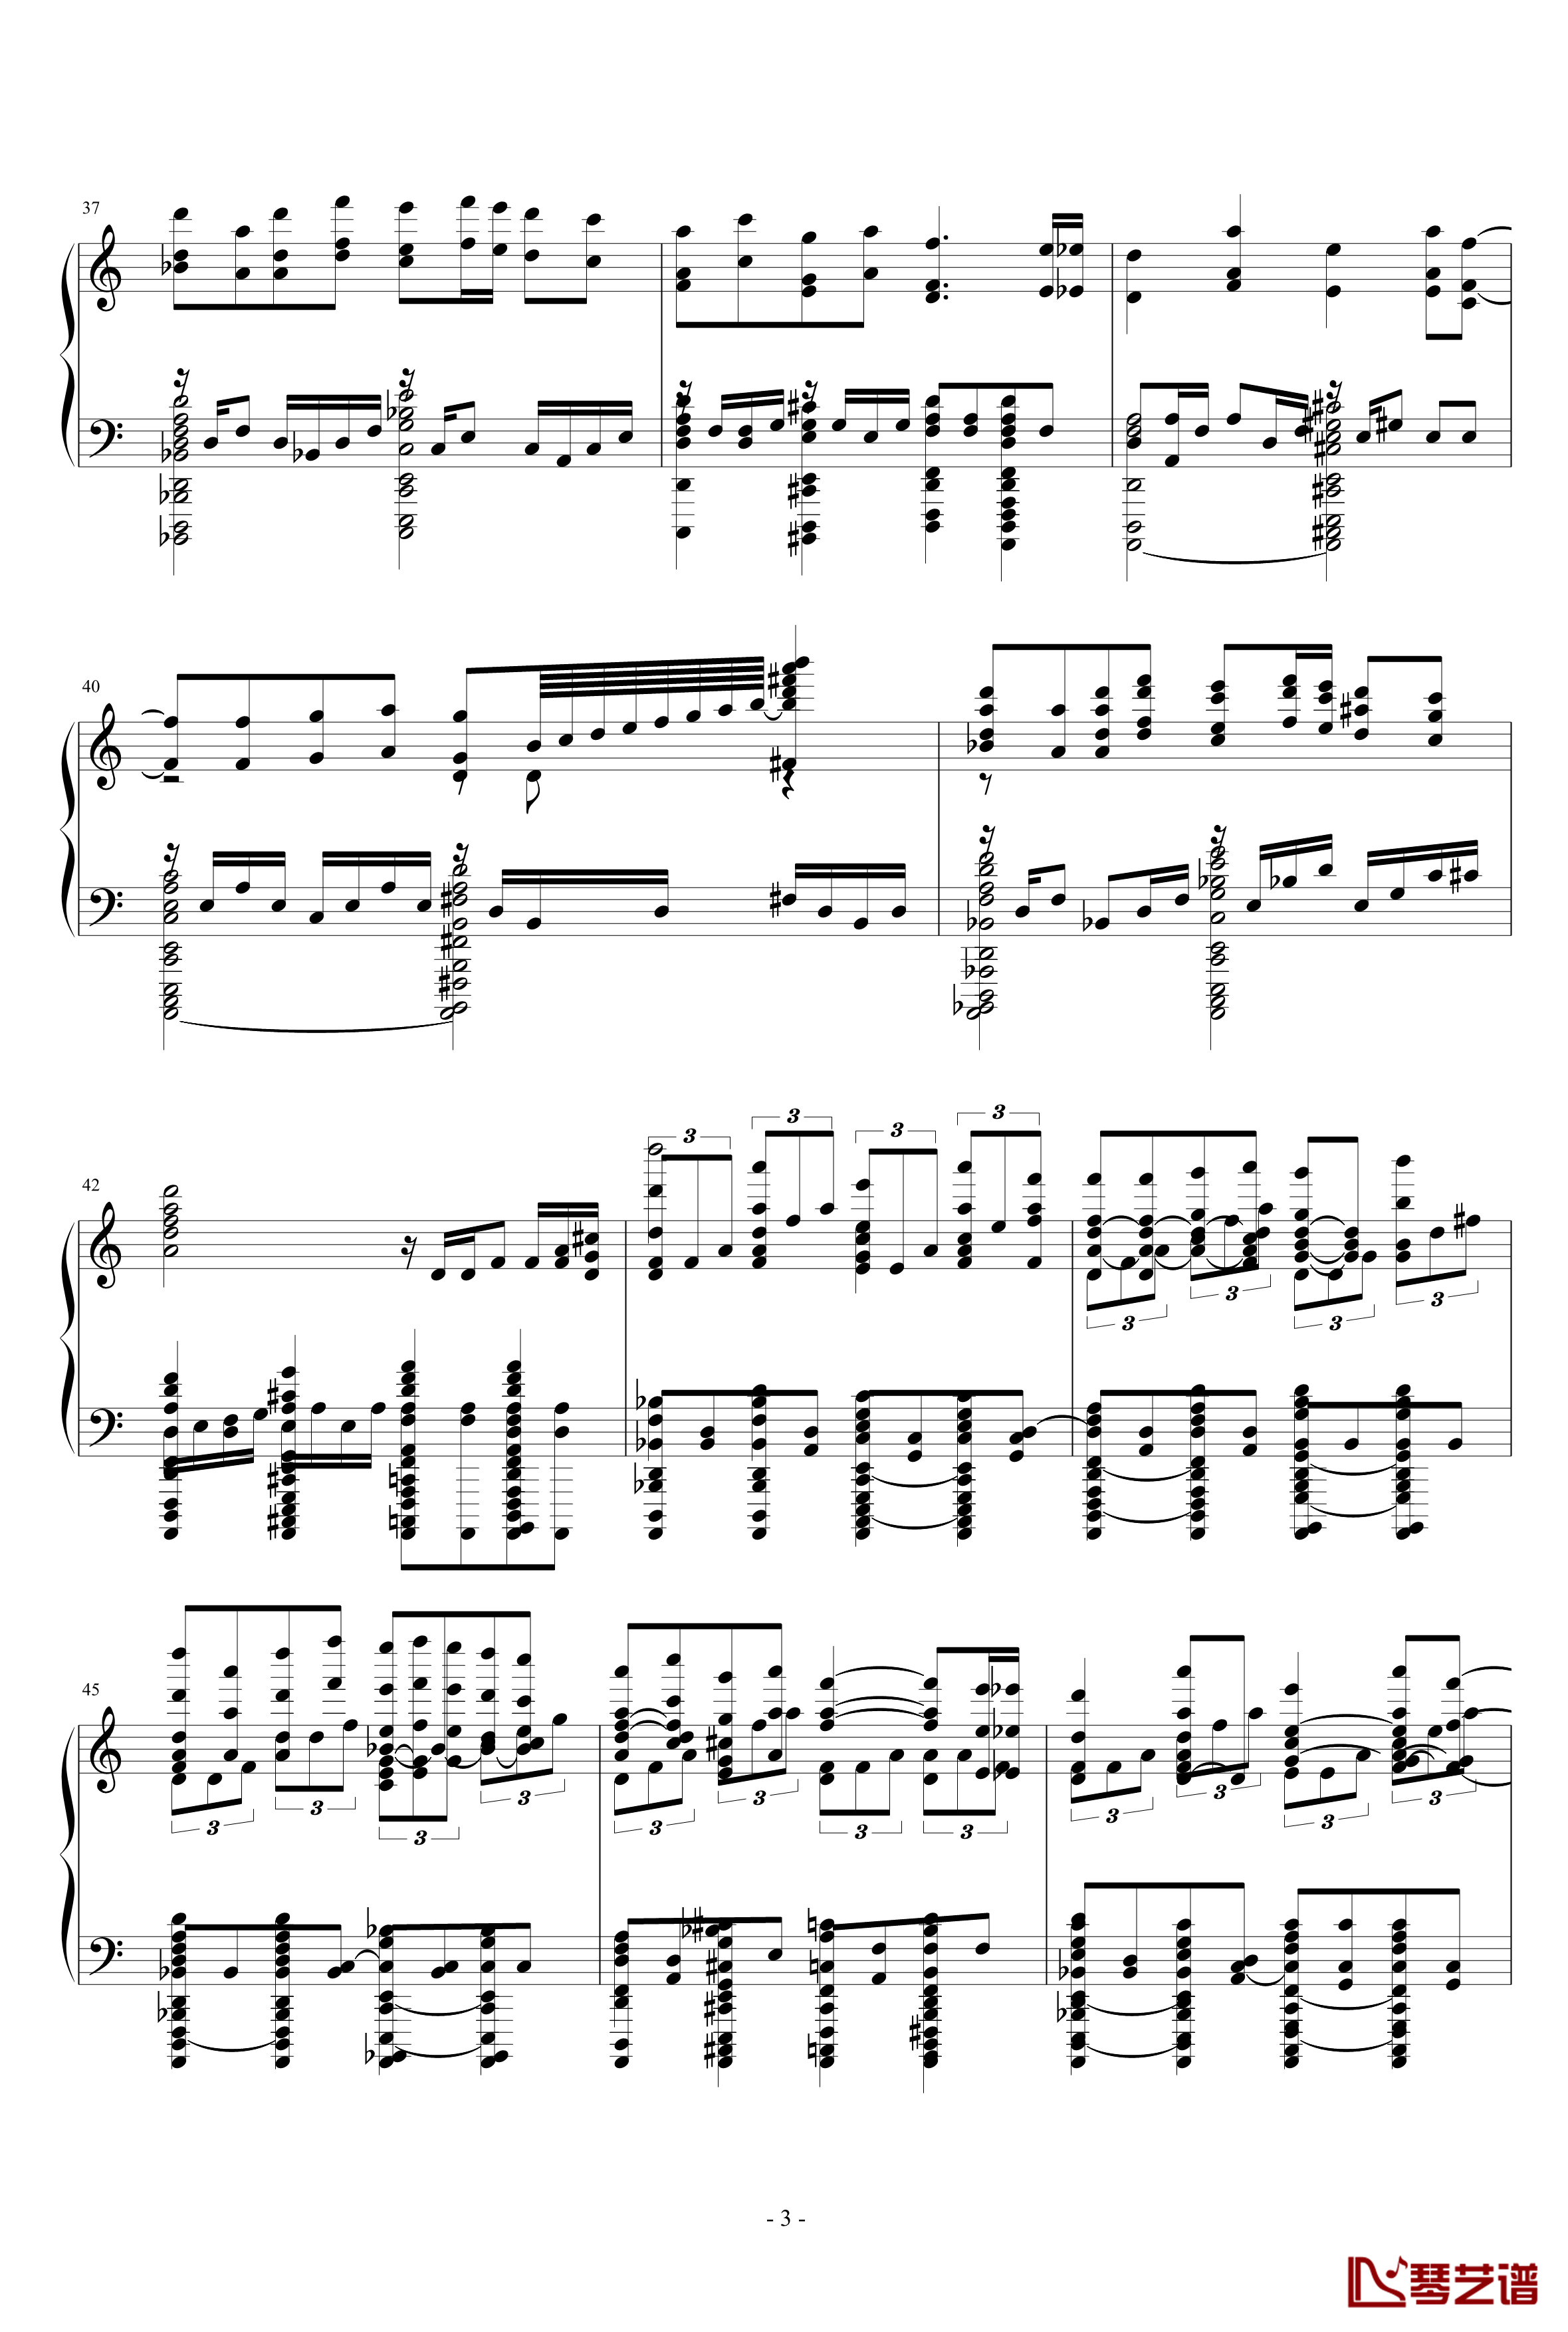 死亡华尔兹钢琴谱-简化版-水墨丹青music-琴艺谱